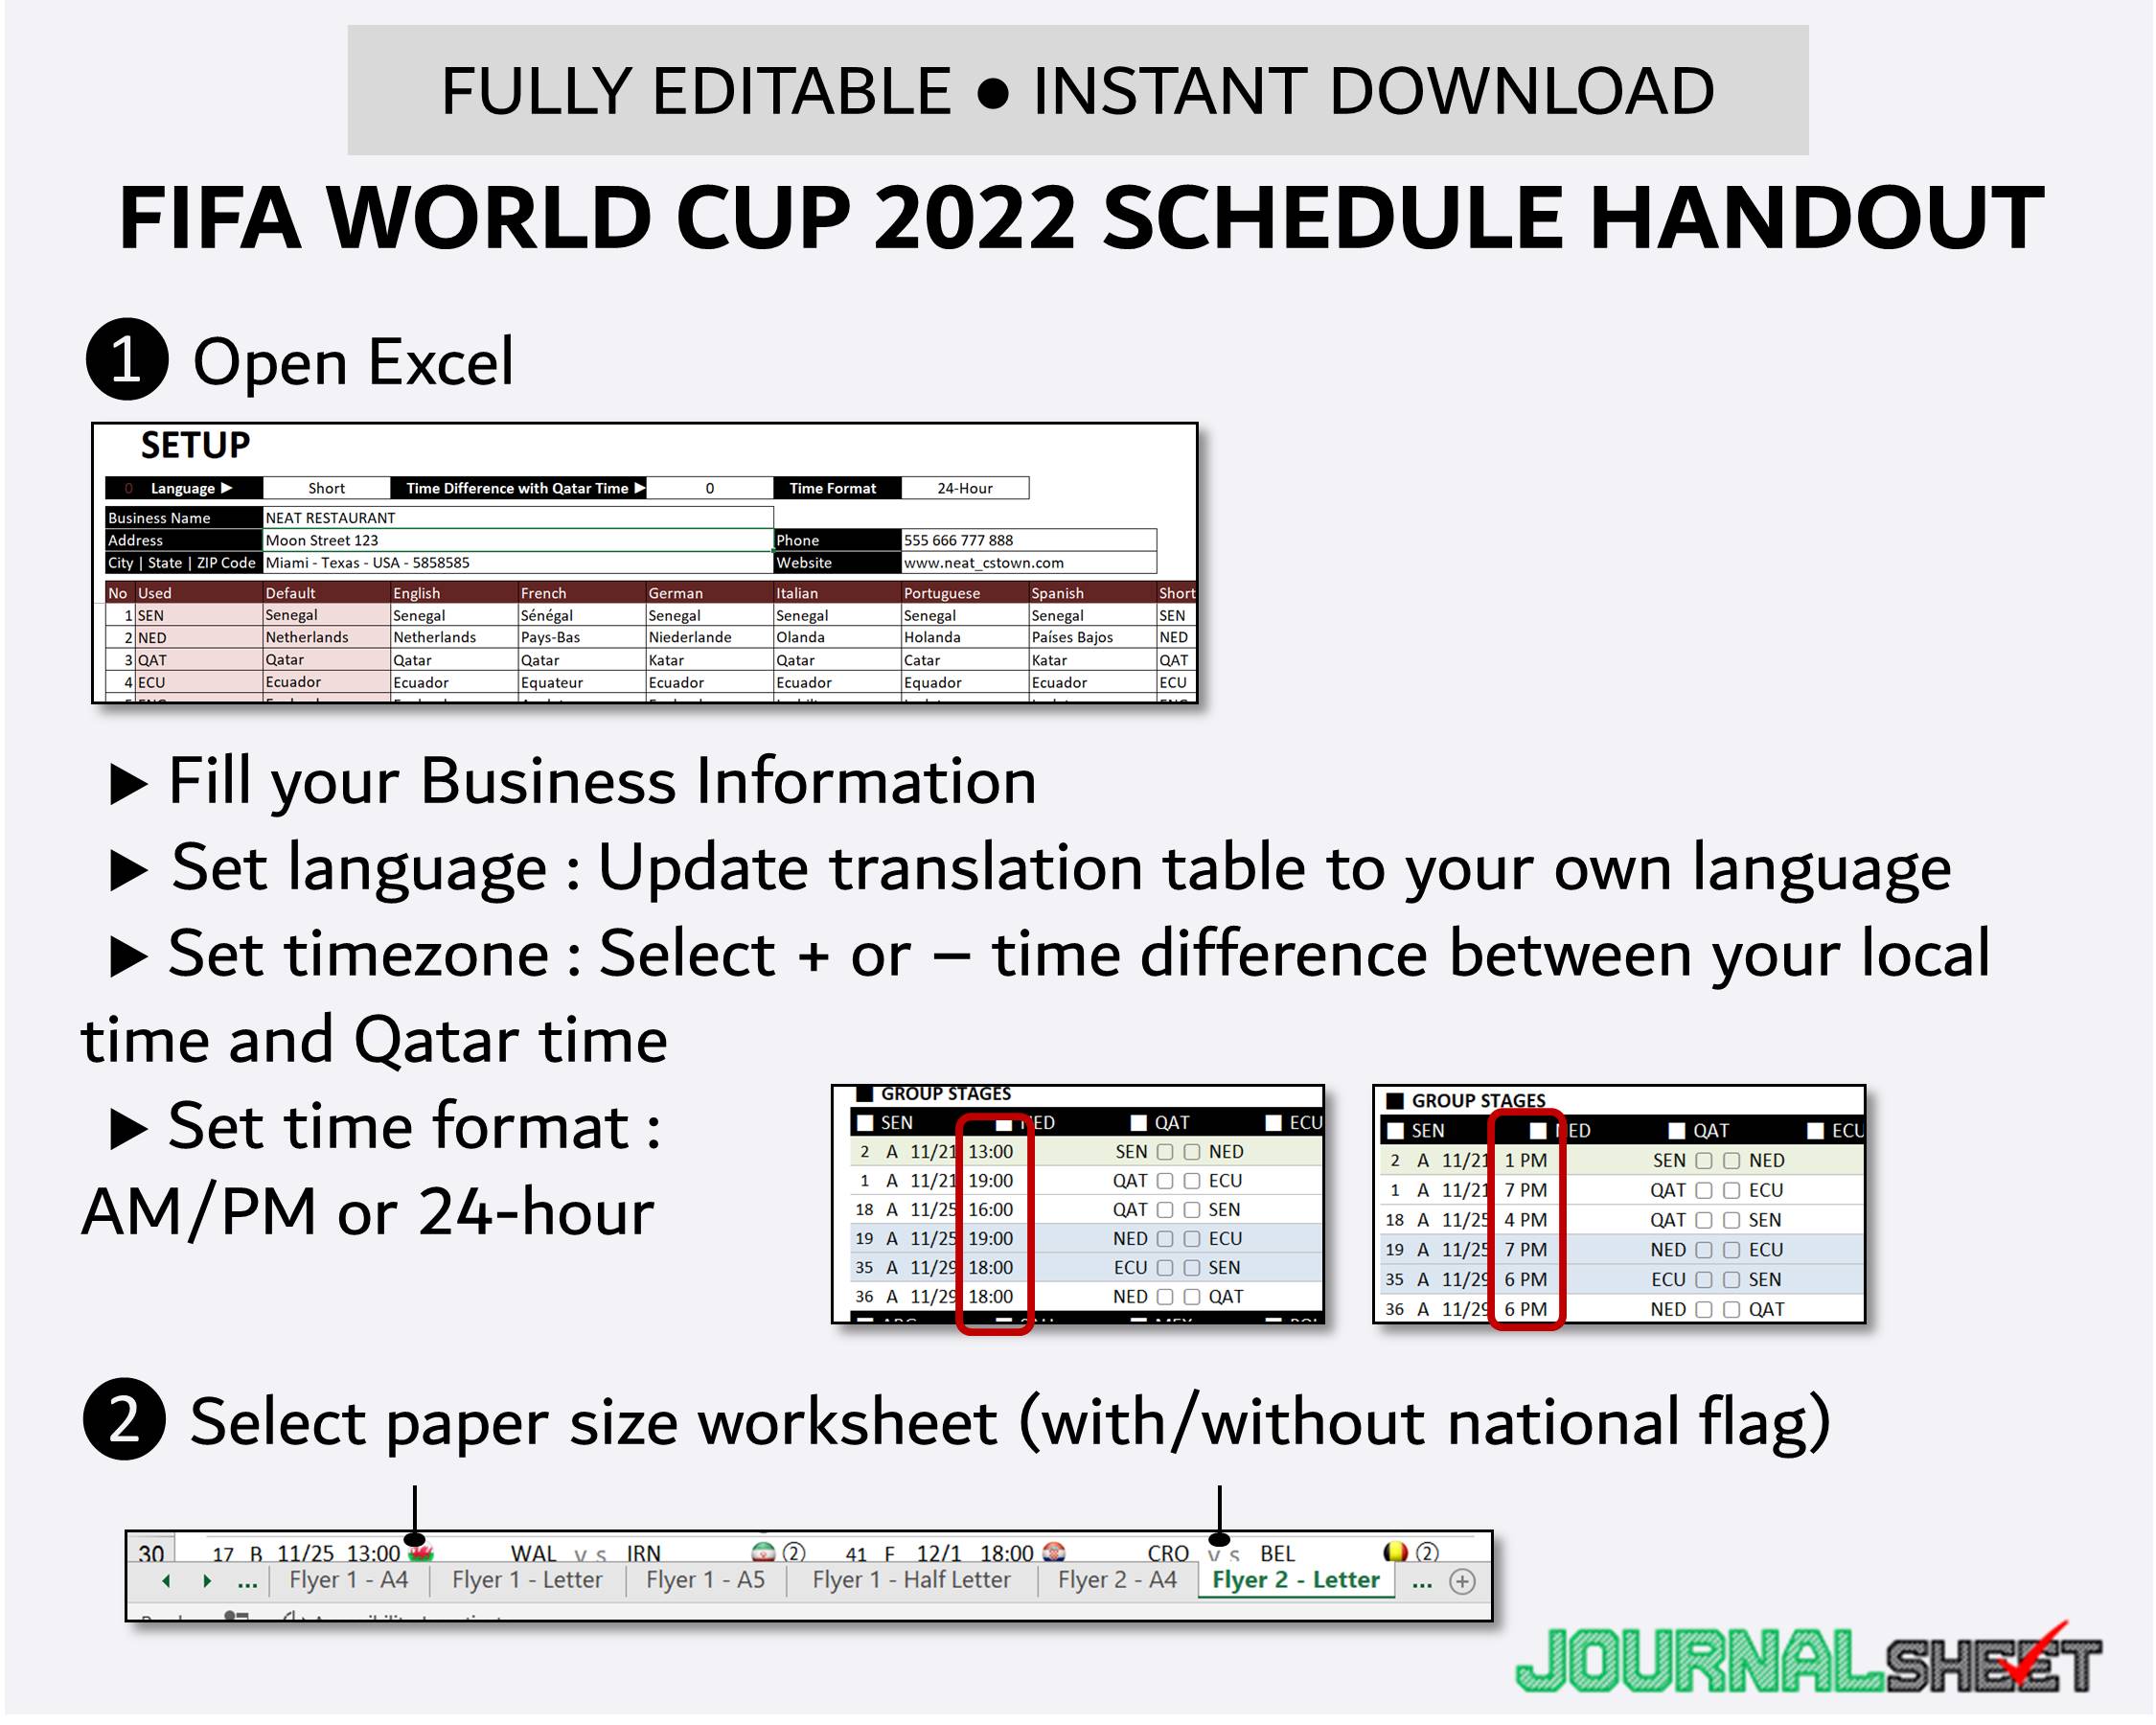 World Cup 2022 Handout - Setup Timezone